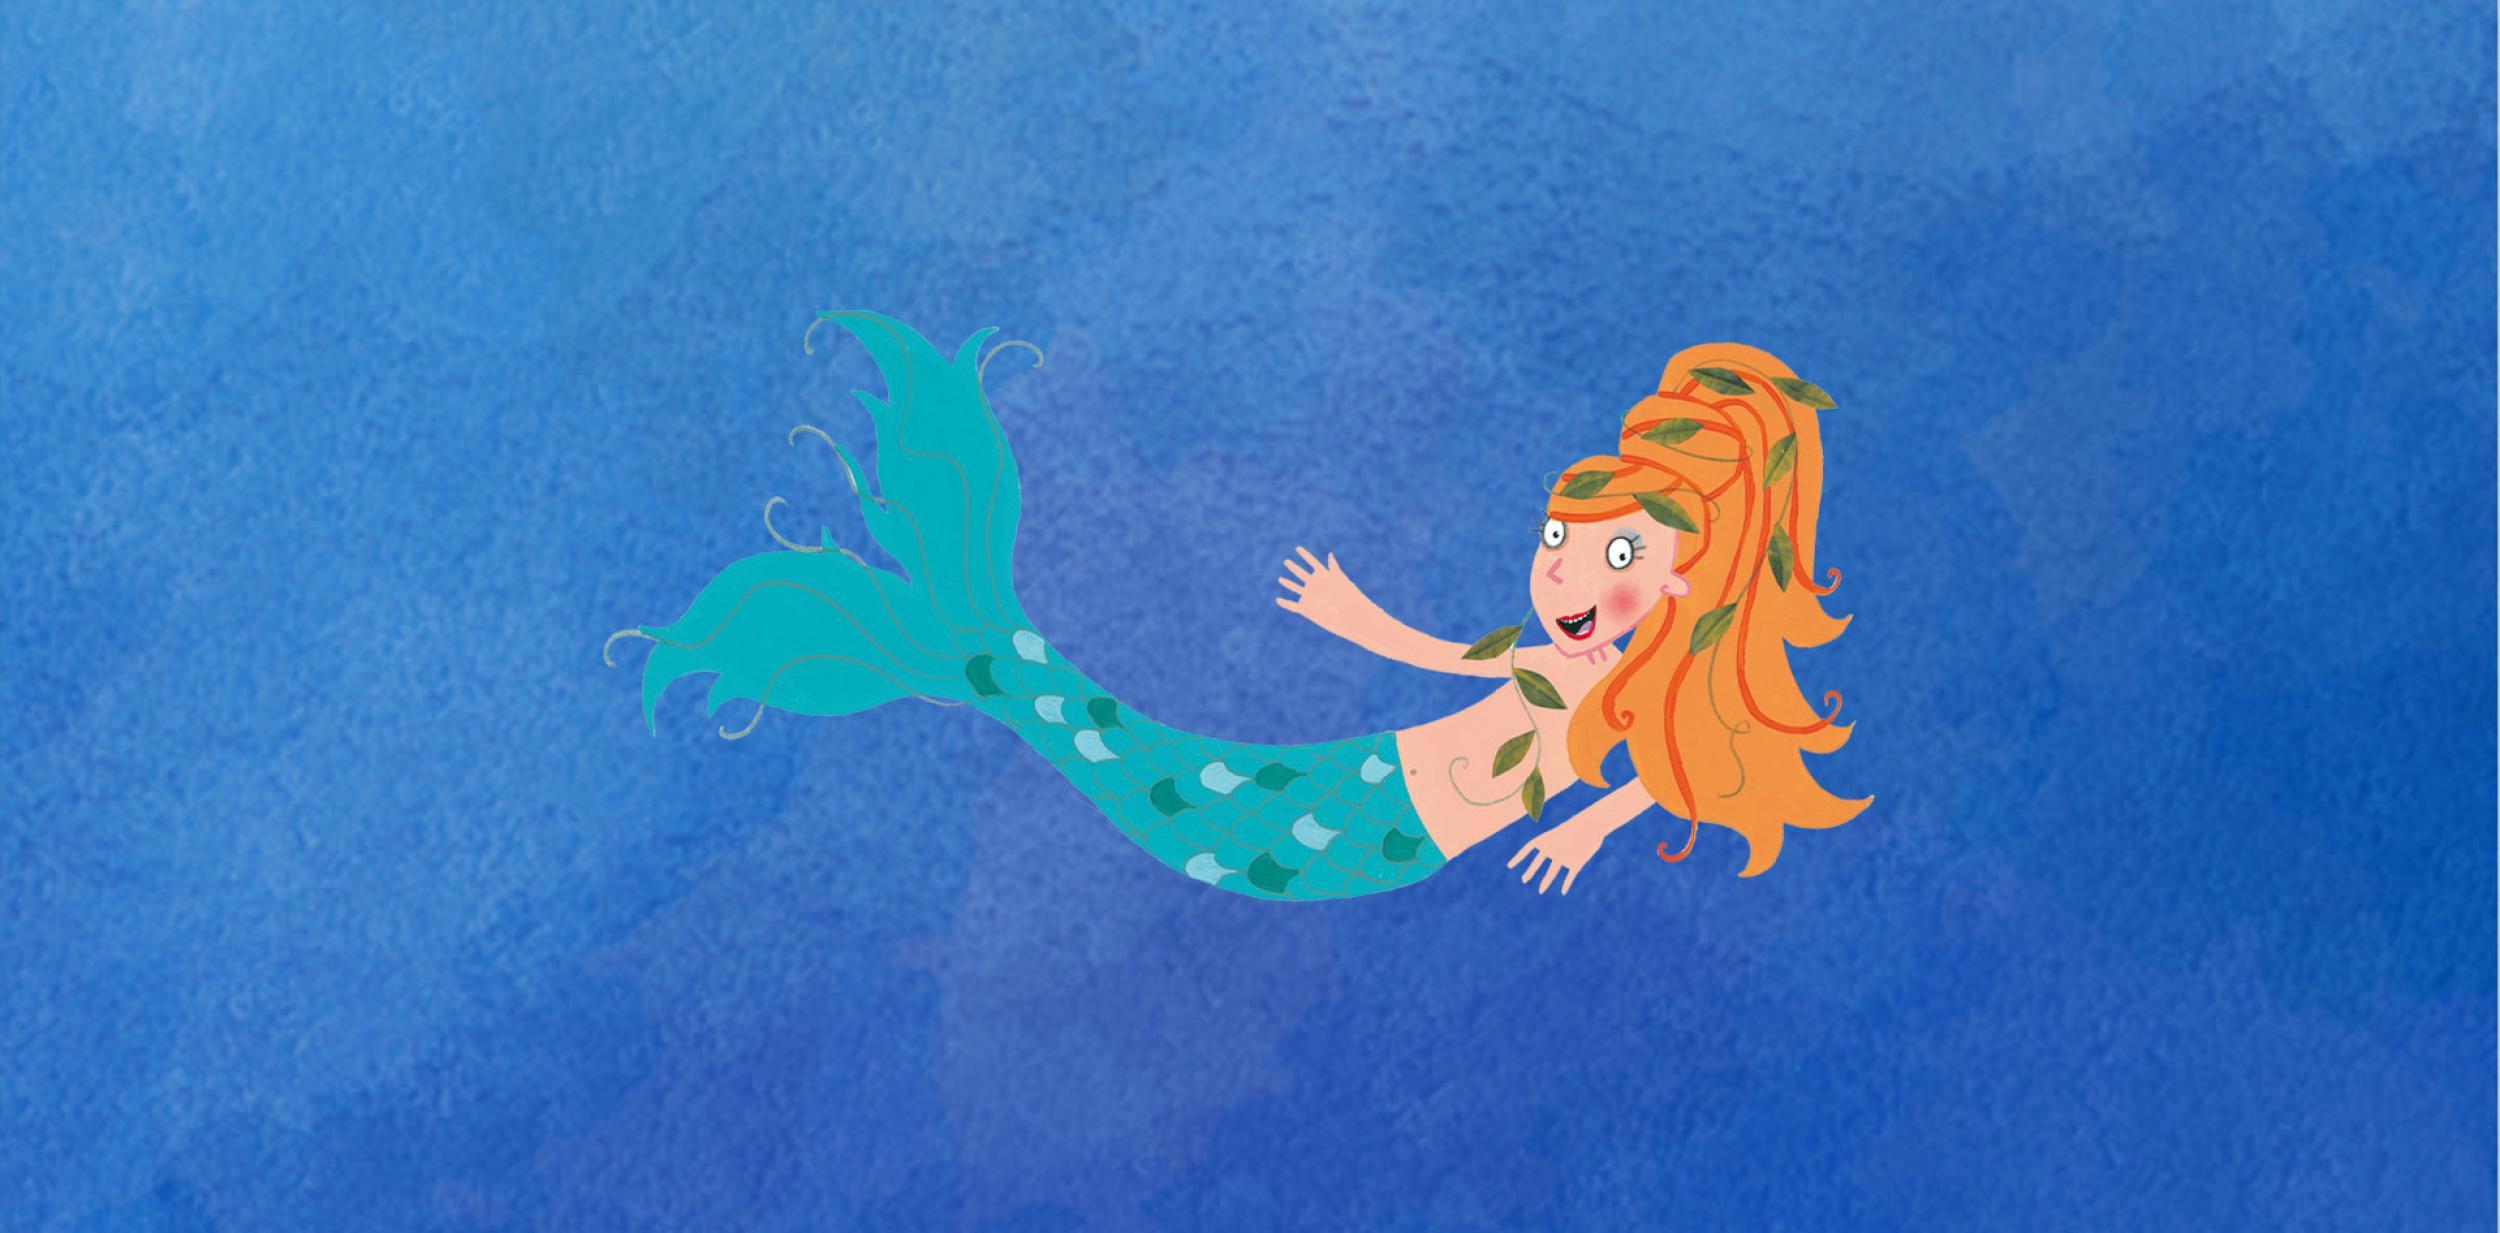 Mermaid illustration